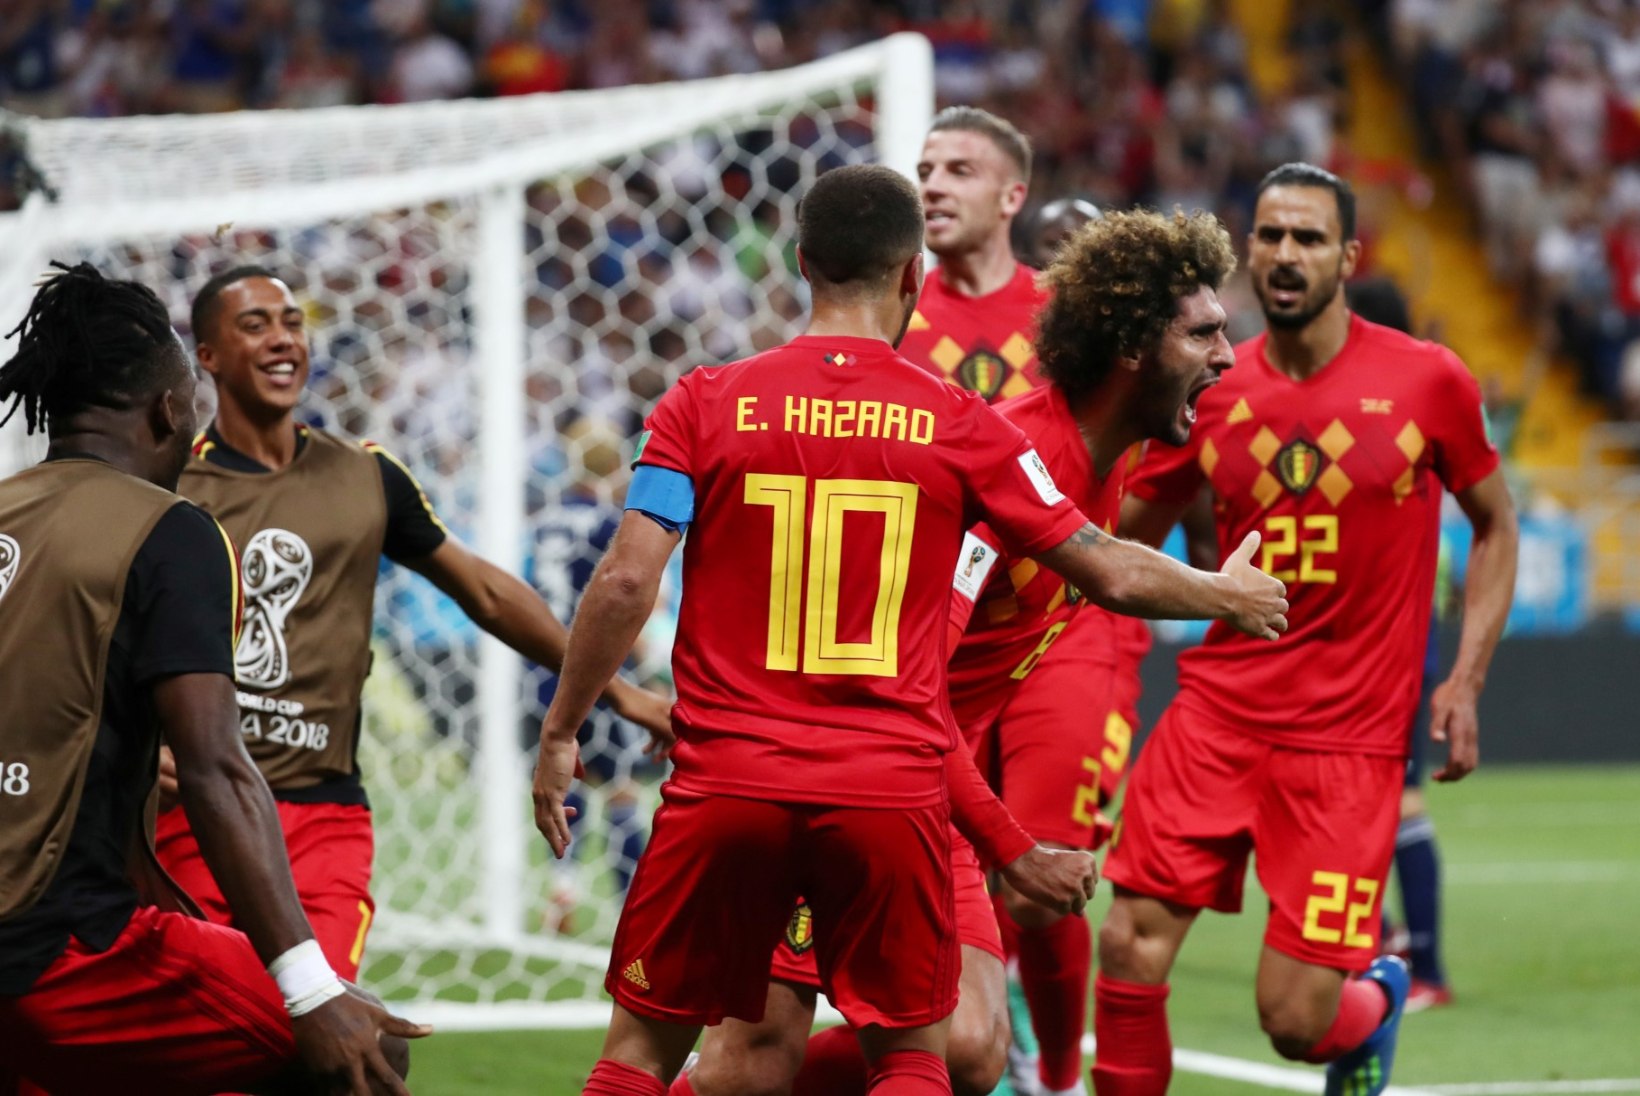 NII SEE JUHTUS | Jalgpalli MM: Belgia pääses ülenoatera, Brasiilia näitas musklit, nüüd madistatakse omavahel